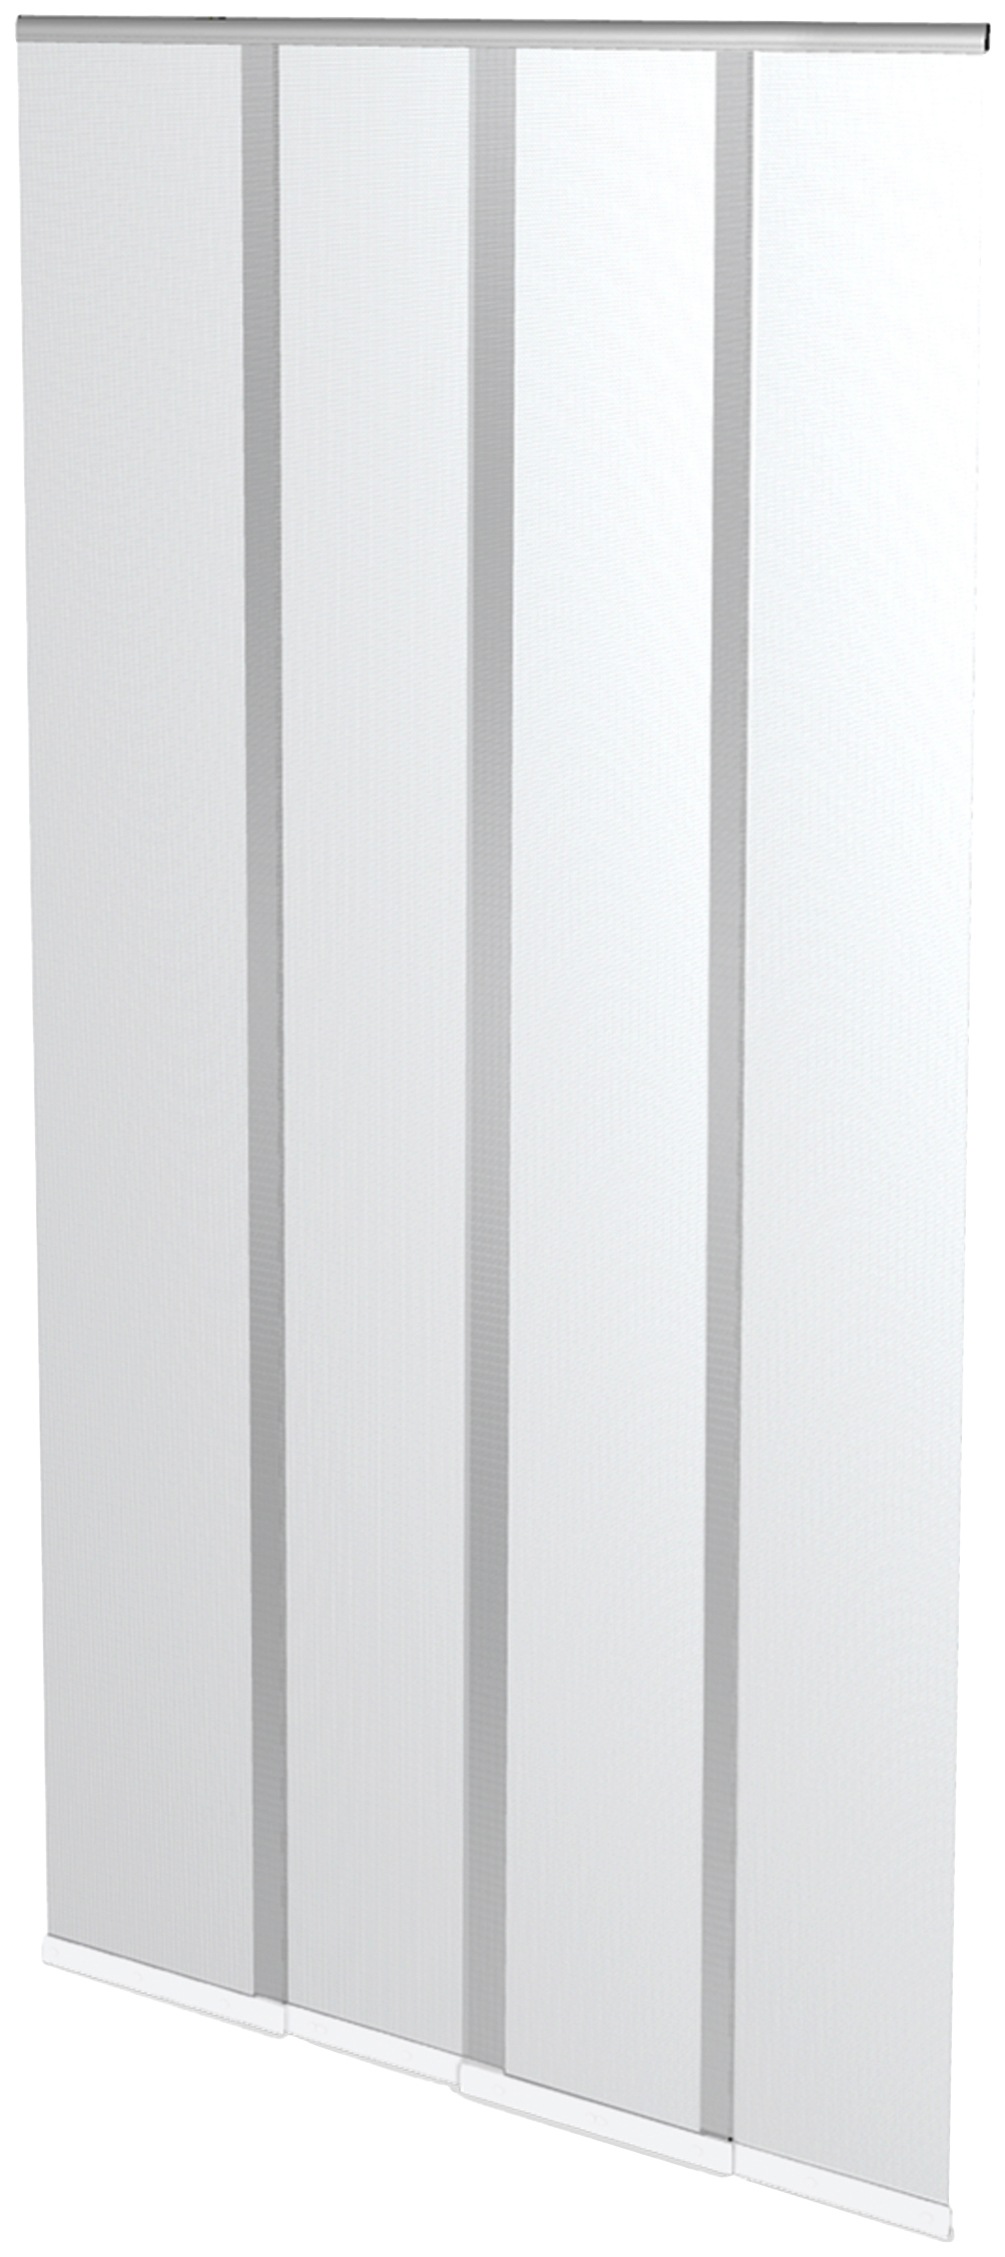 Windhager Insektenschutz-Vorhang, BxH: 100x220 cm, kürzbar